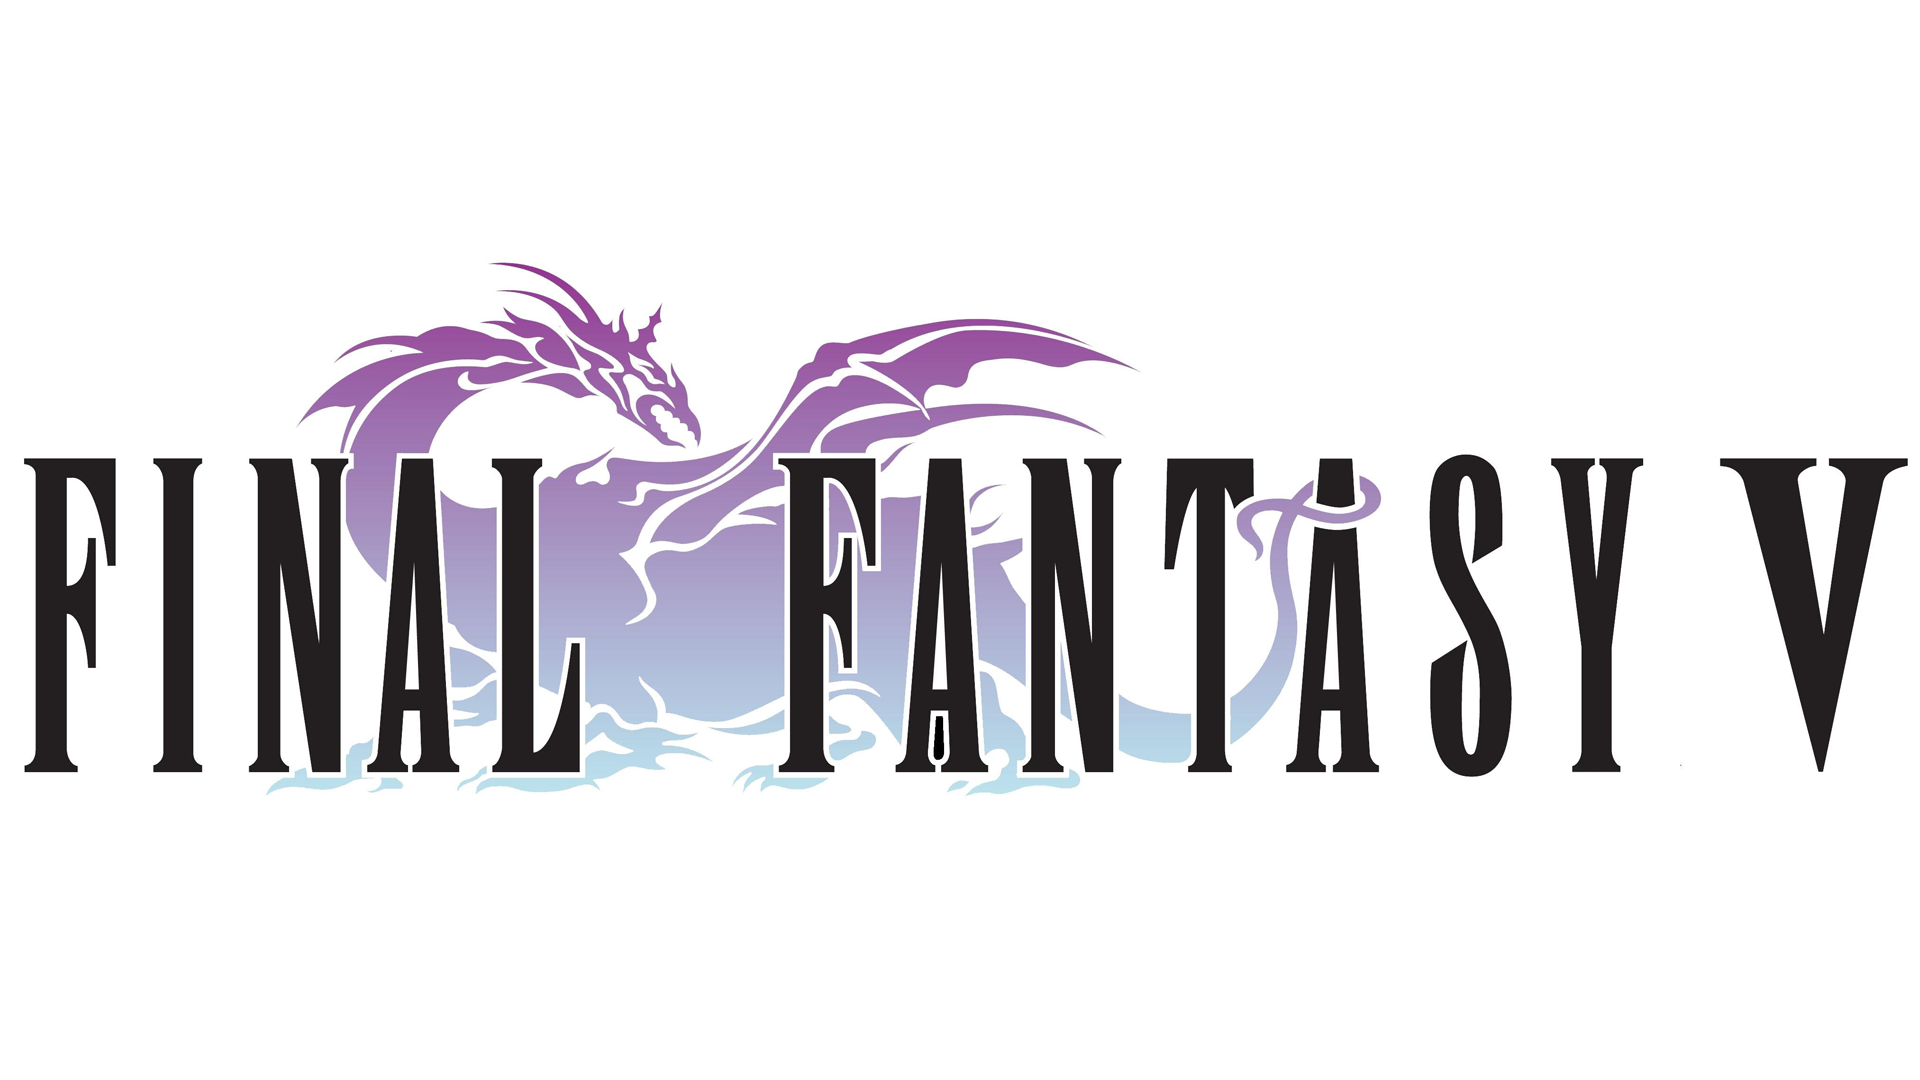 Final Fantasy V Backgrounds on Wallpapers Vista